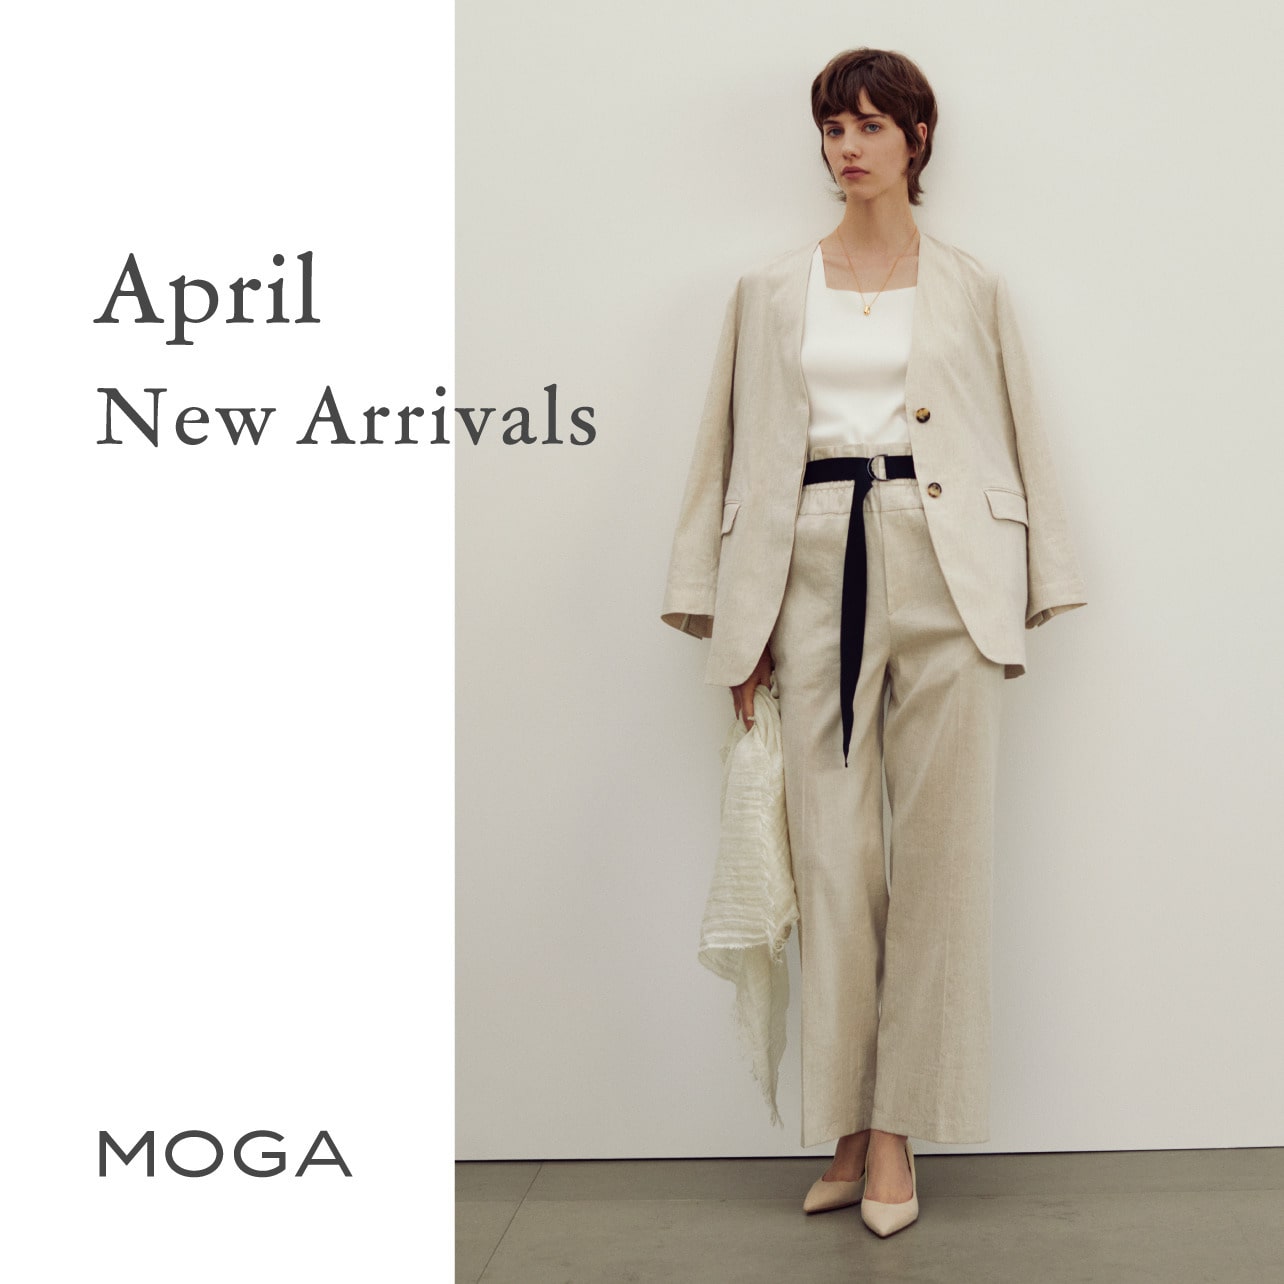 MOGA 23 April New Arrivals